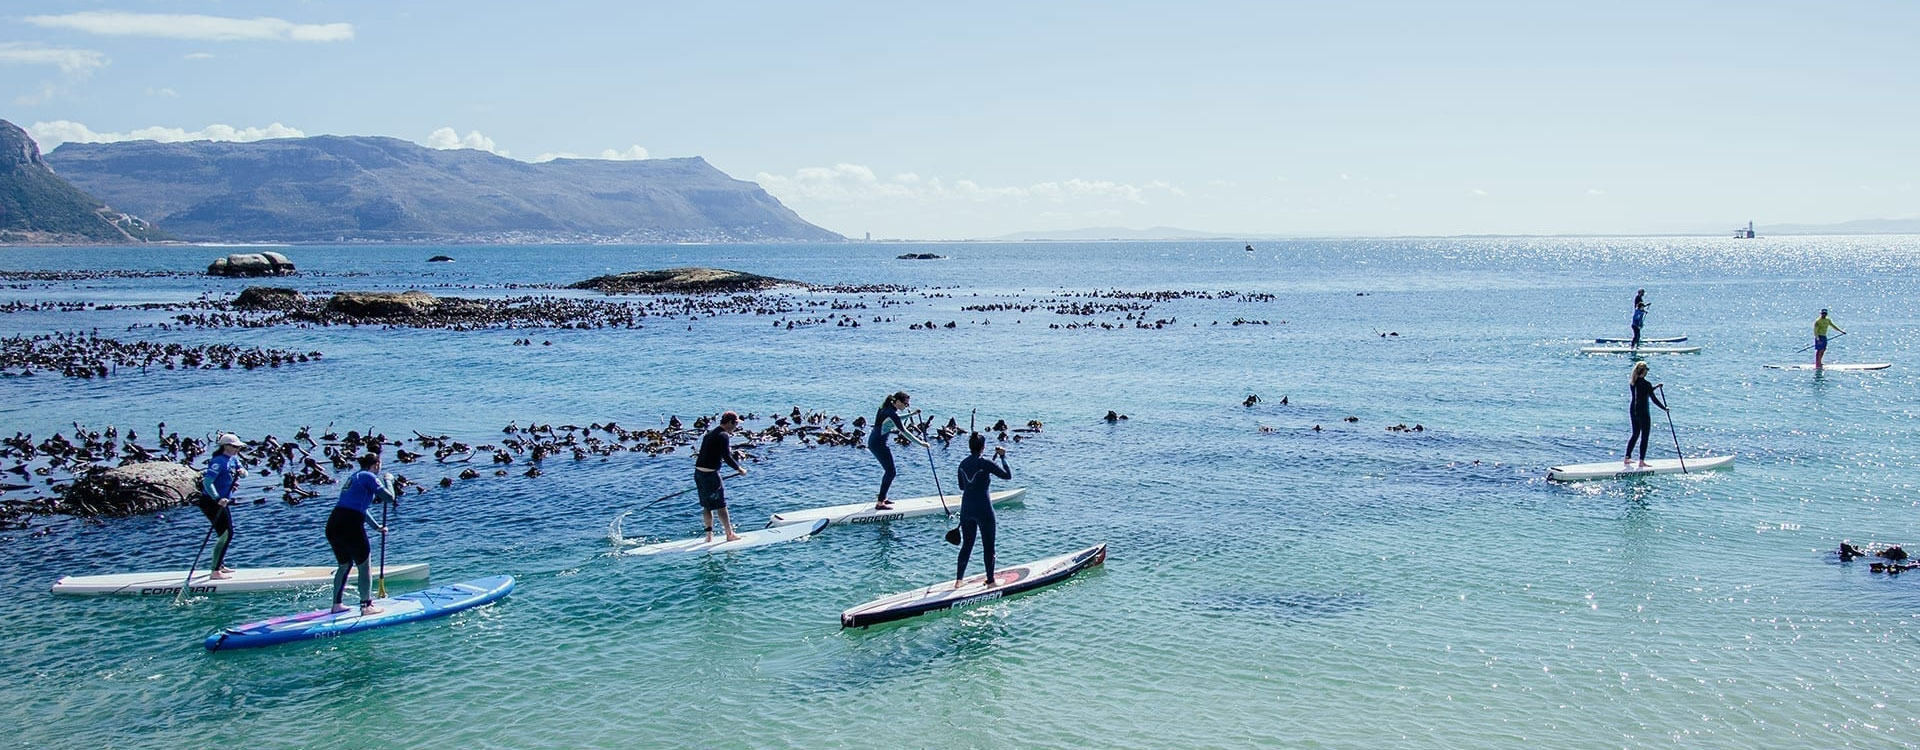 Sea Kayaking & Cape Point